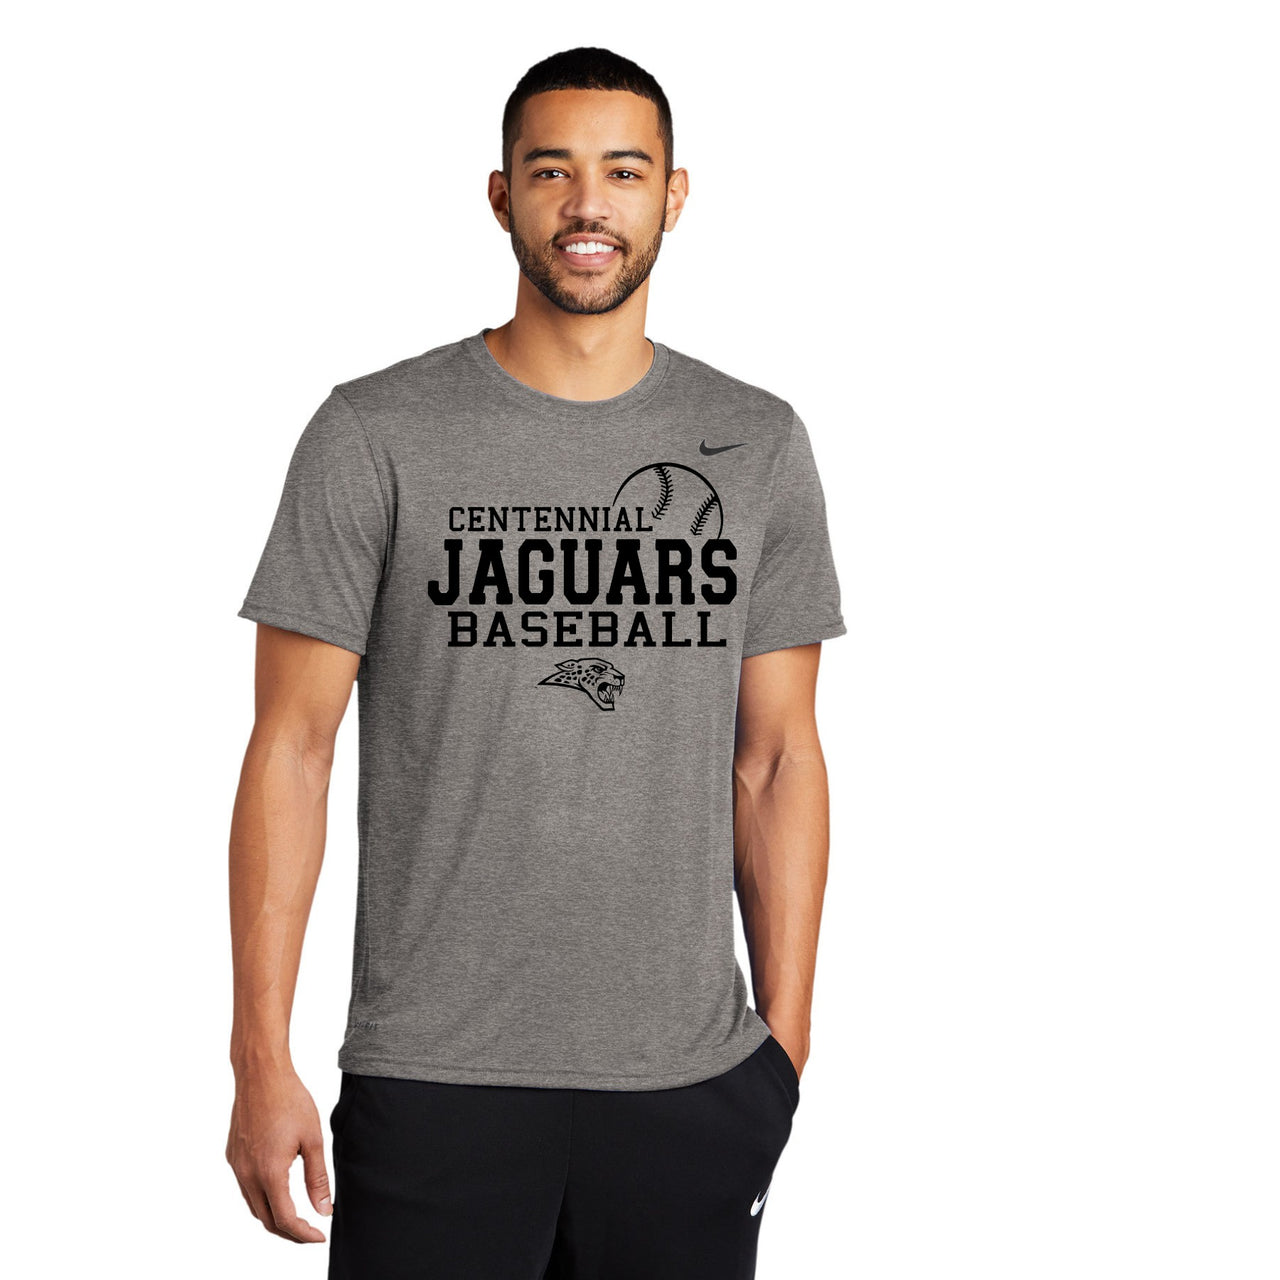 Centennial Jaguars Baseball - Unisex Nike Legend Tee